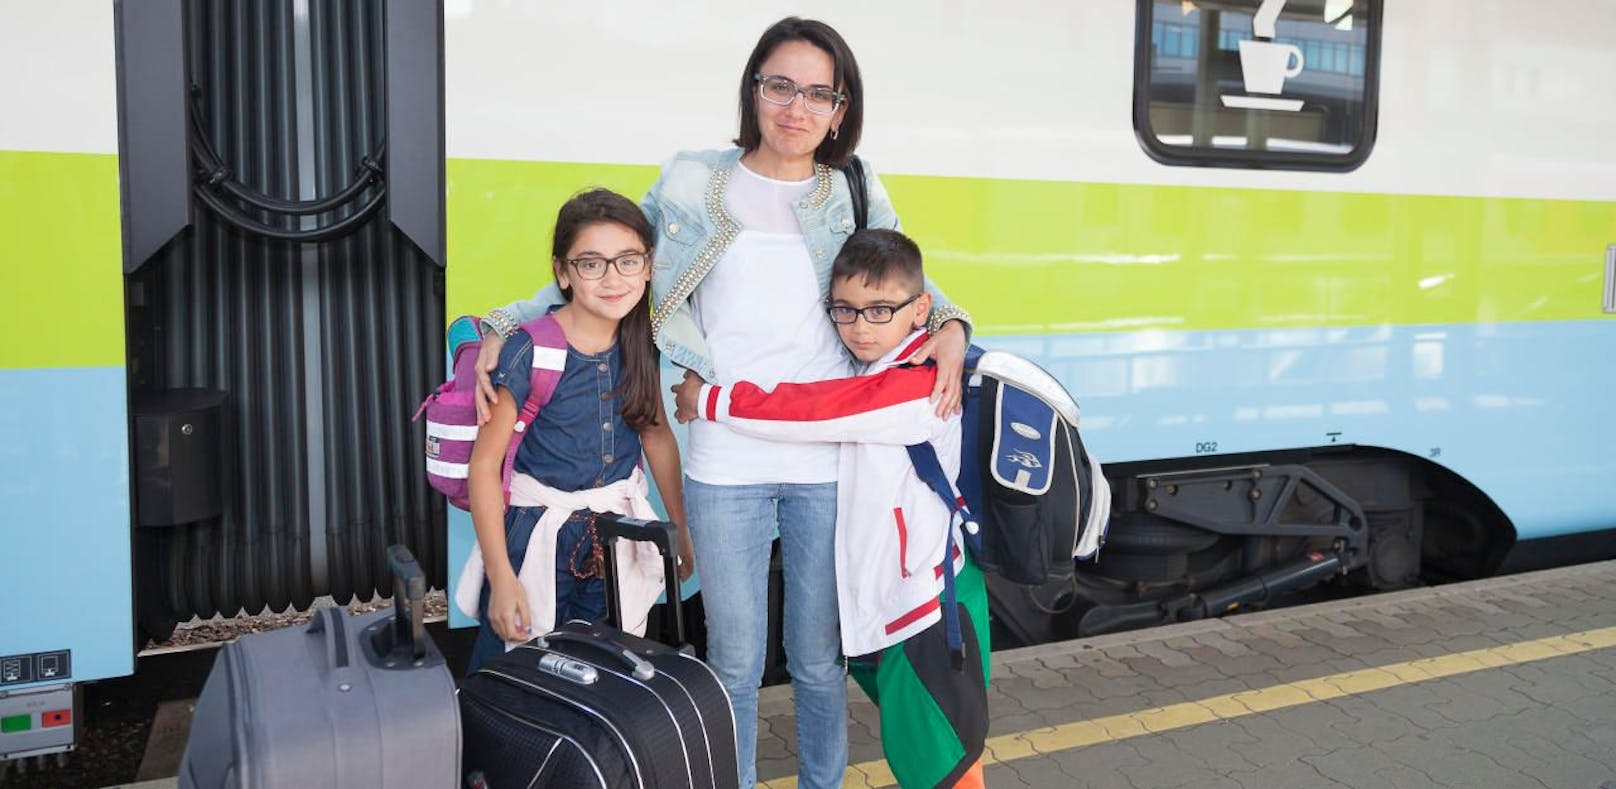 Narine und ihre beiden Kinder bei der Ankunft am Bahnhof.